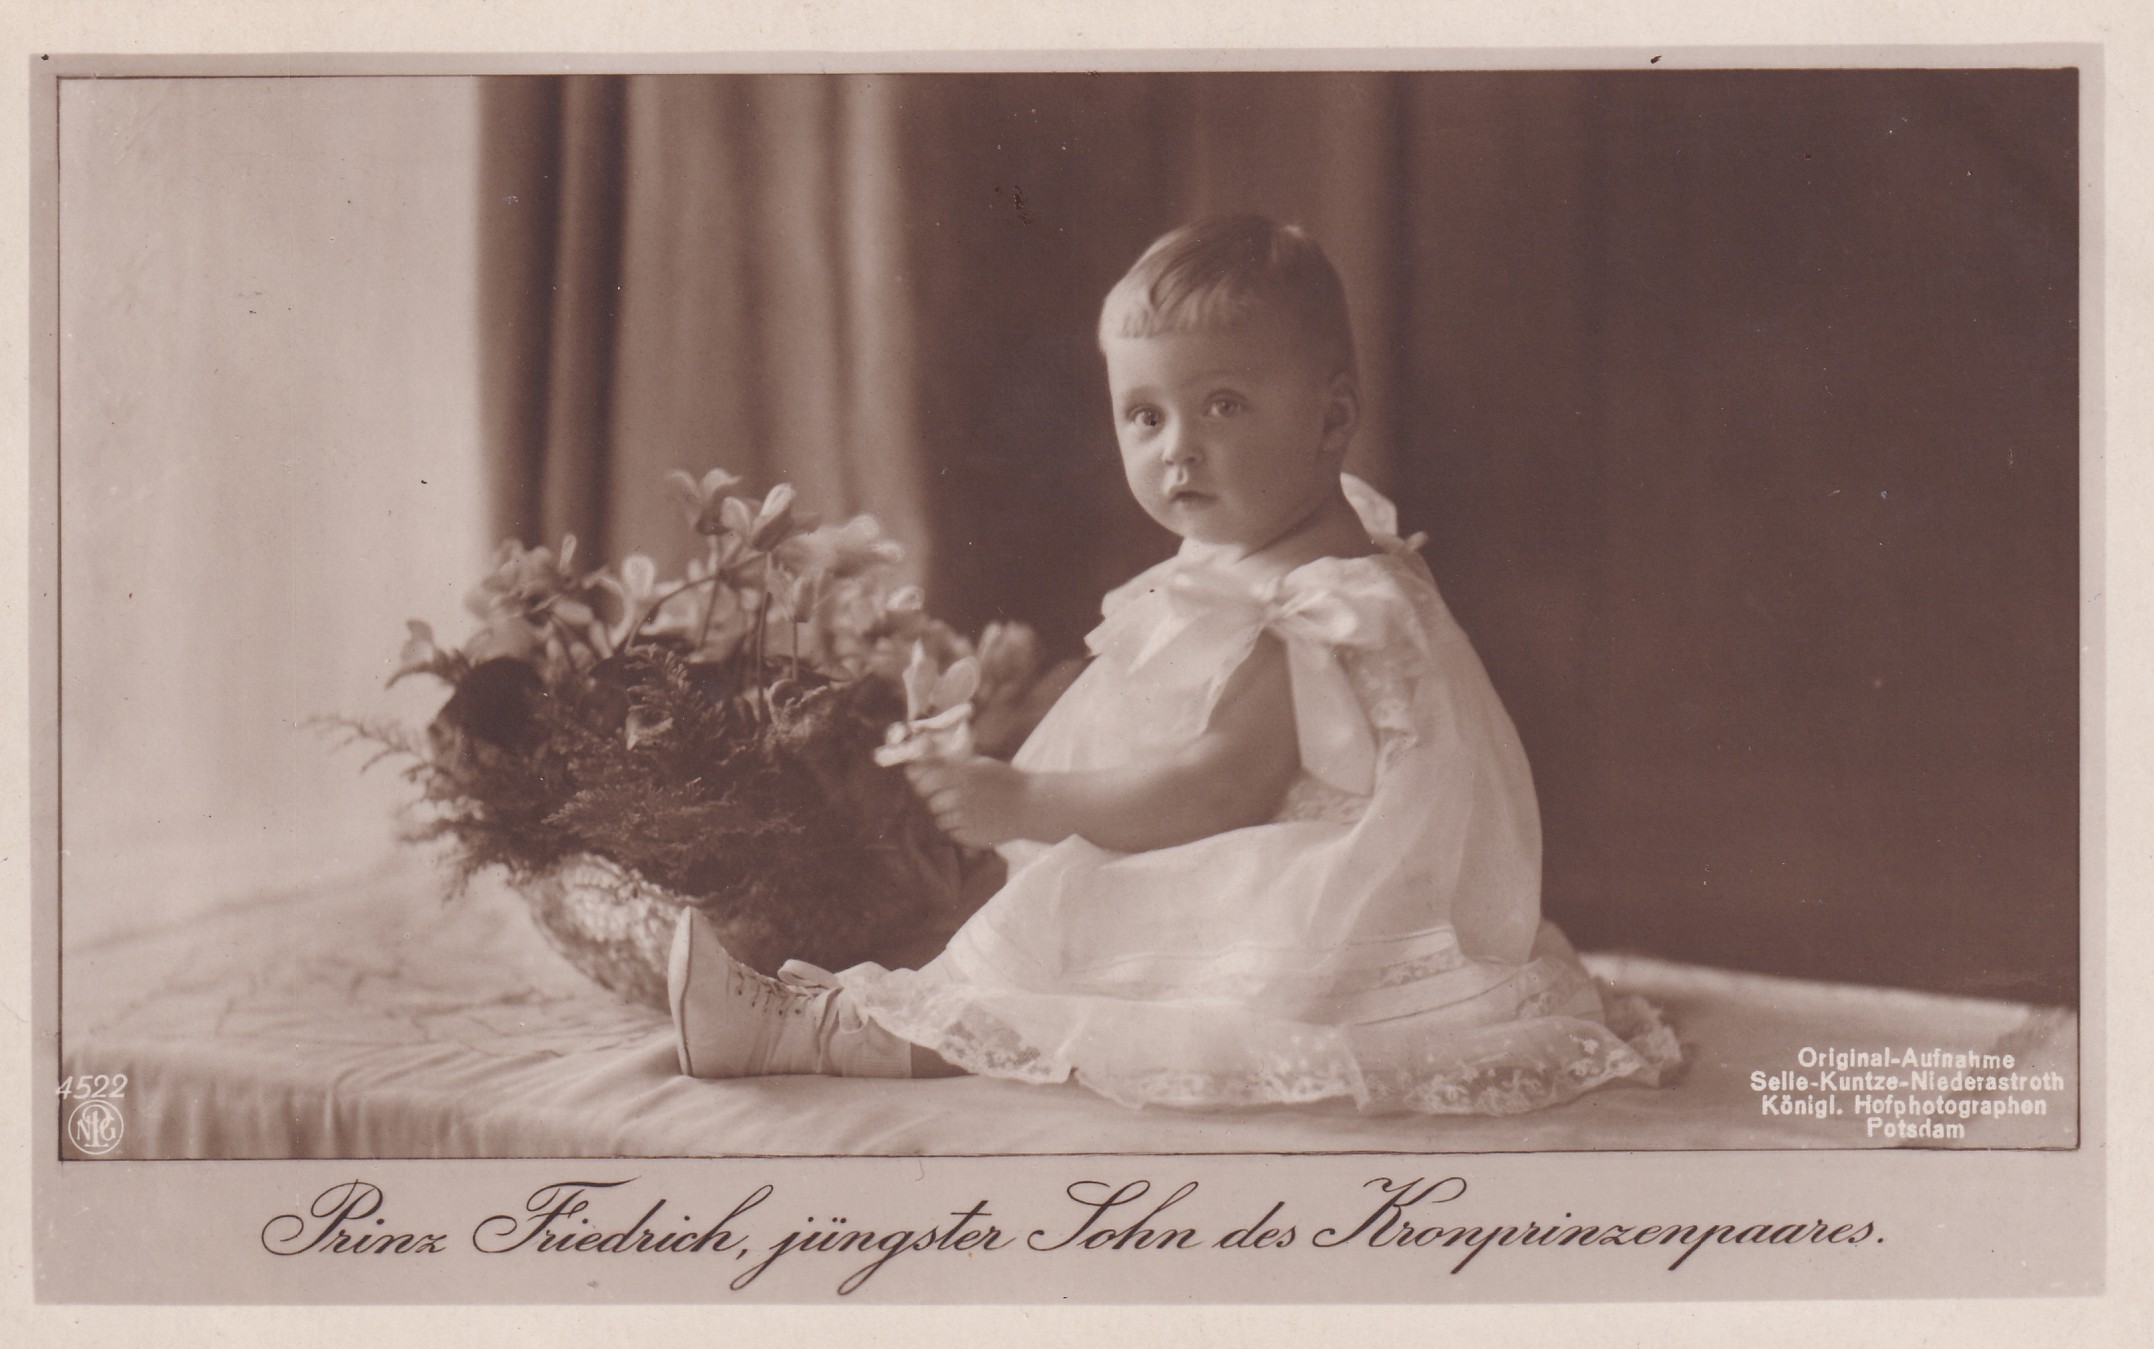 Bildpostkarte mit Foto des Prinzen Friedrich von Preußen (1911-1966) als Kleinkind, 1912 (Schloß Wernigerode GmbH RR-F)